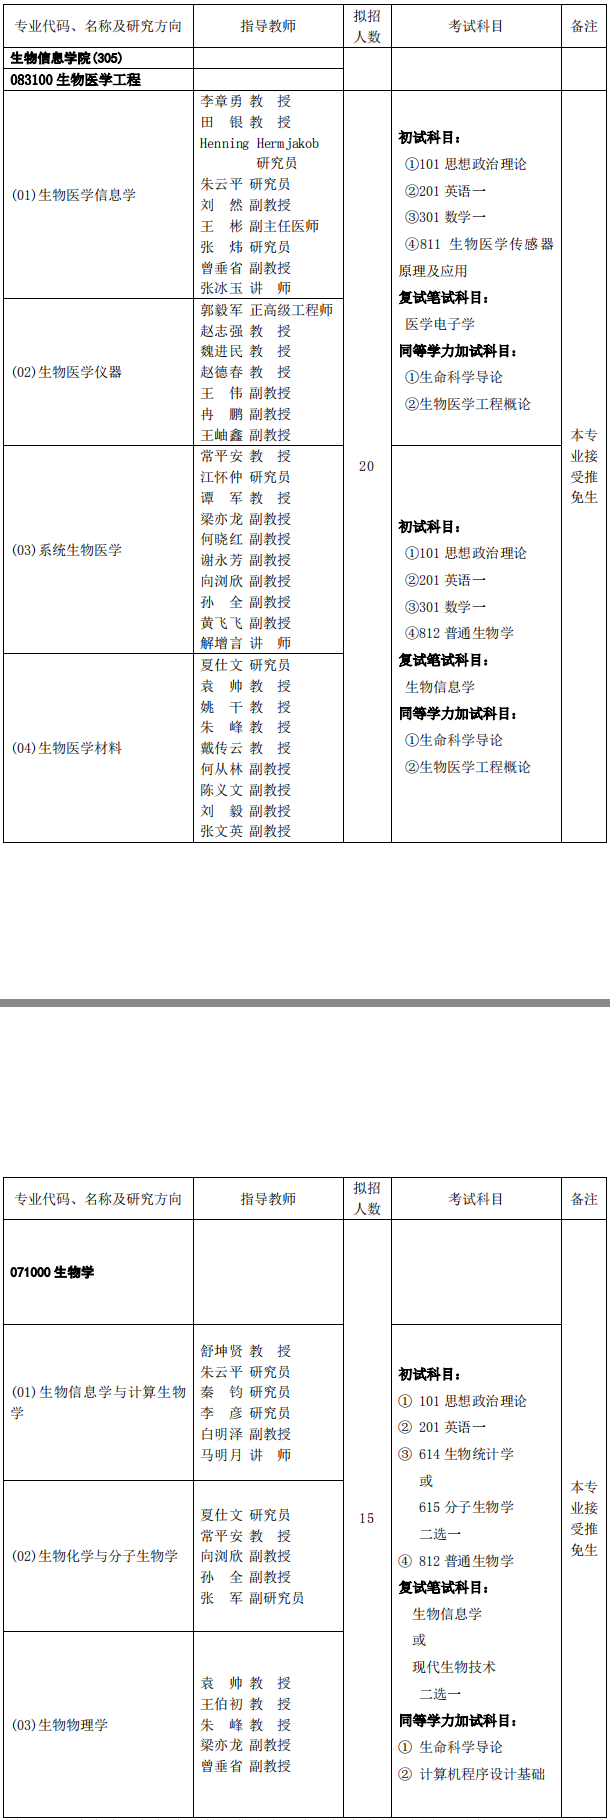 重庆邮电大学生物信息学院2019考研专业目录